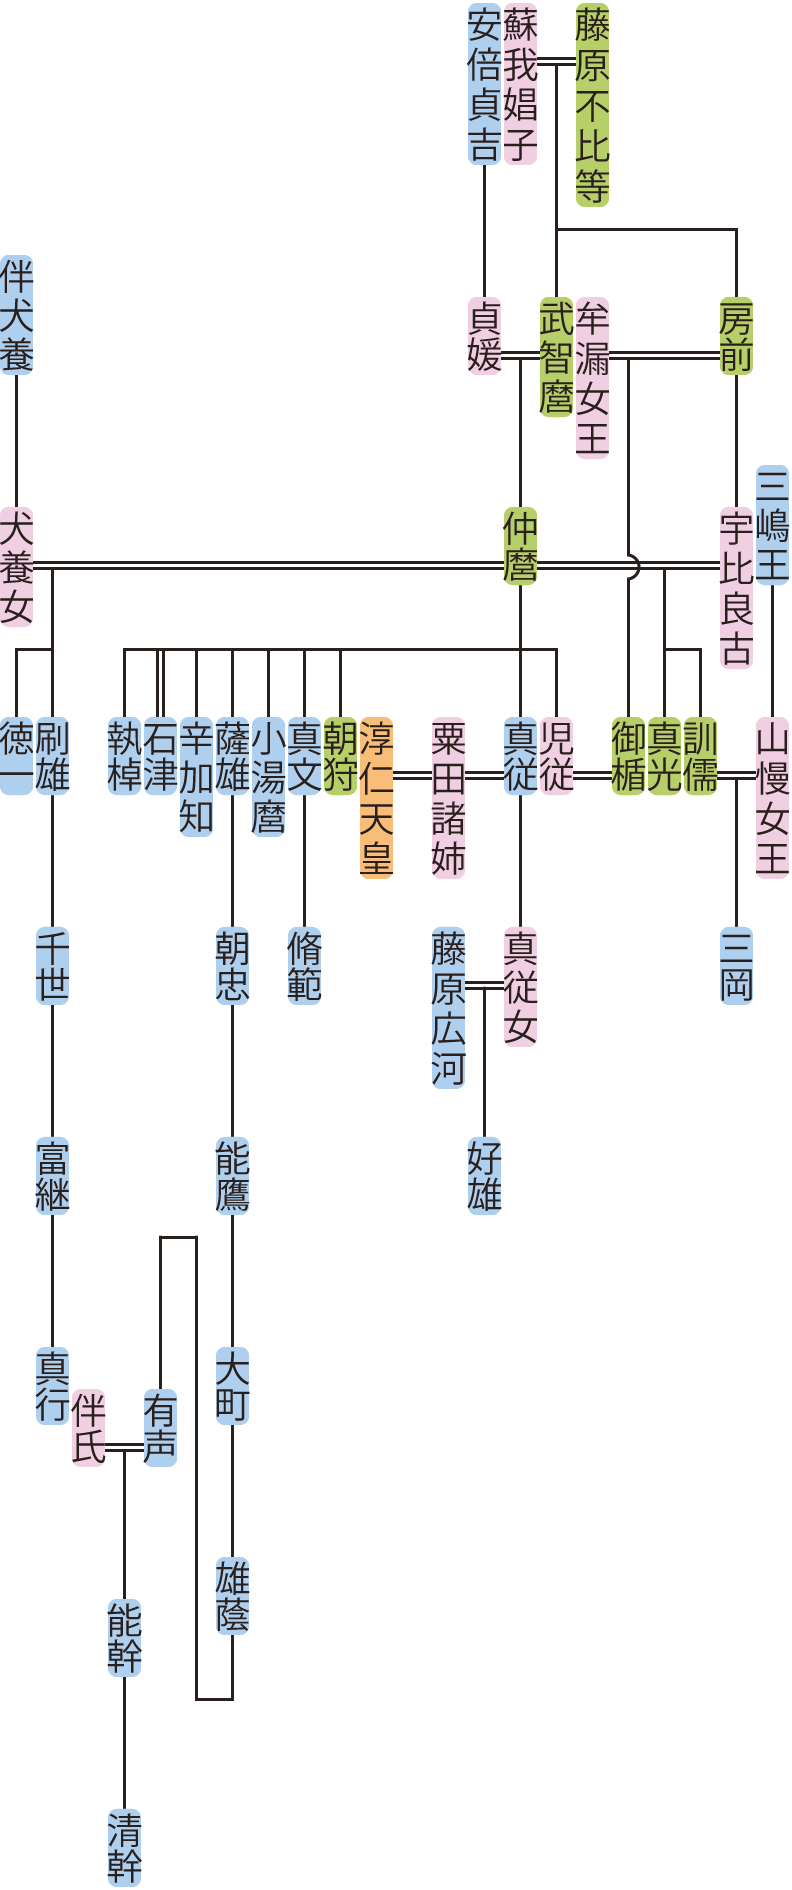 藤原仲麿の系図